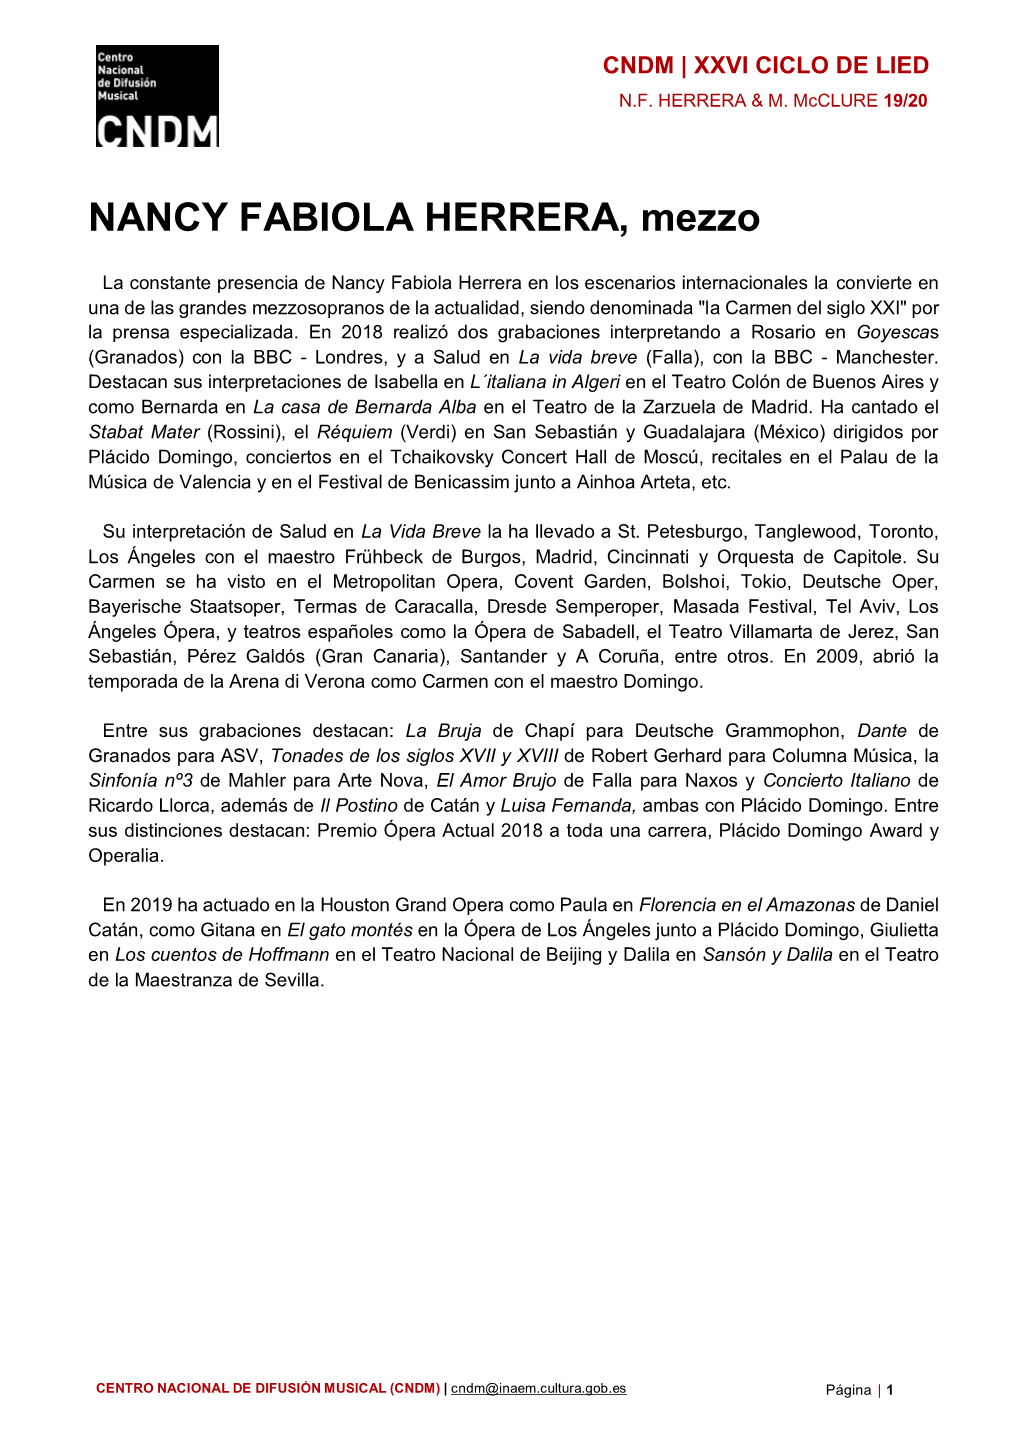 NANCY FABIOLA HERRERA, Mezzo